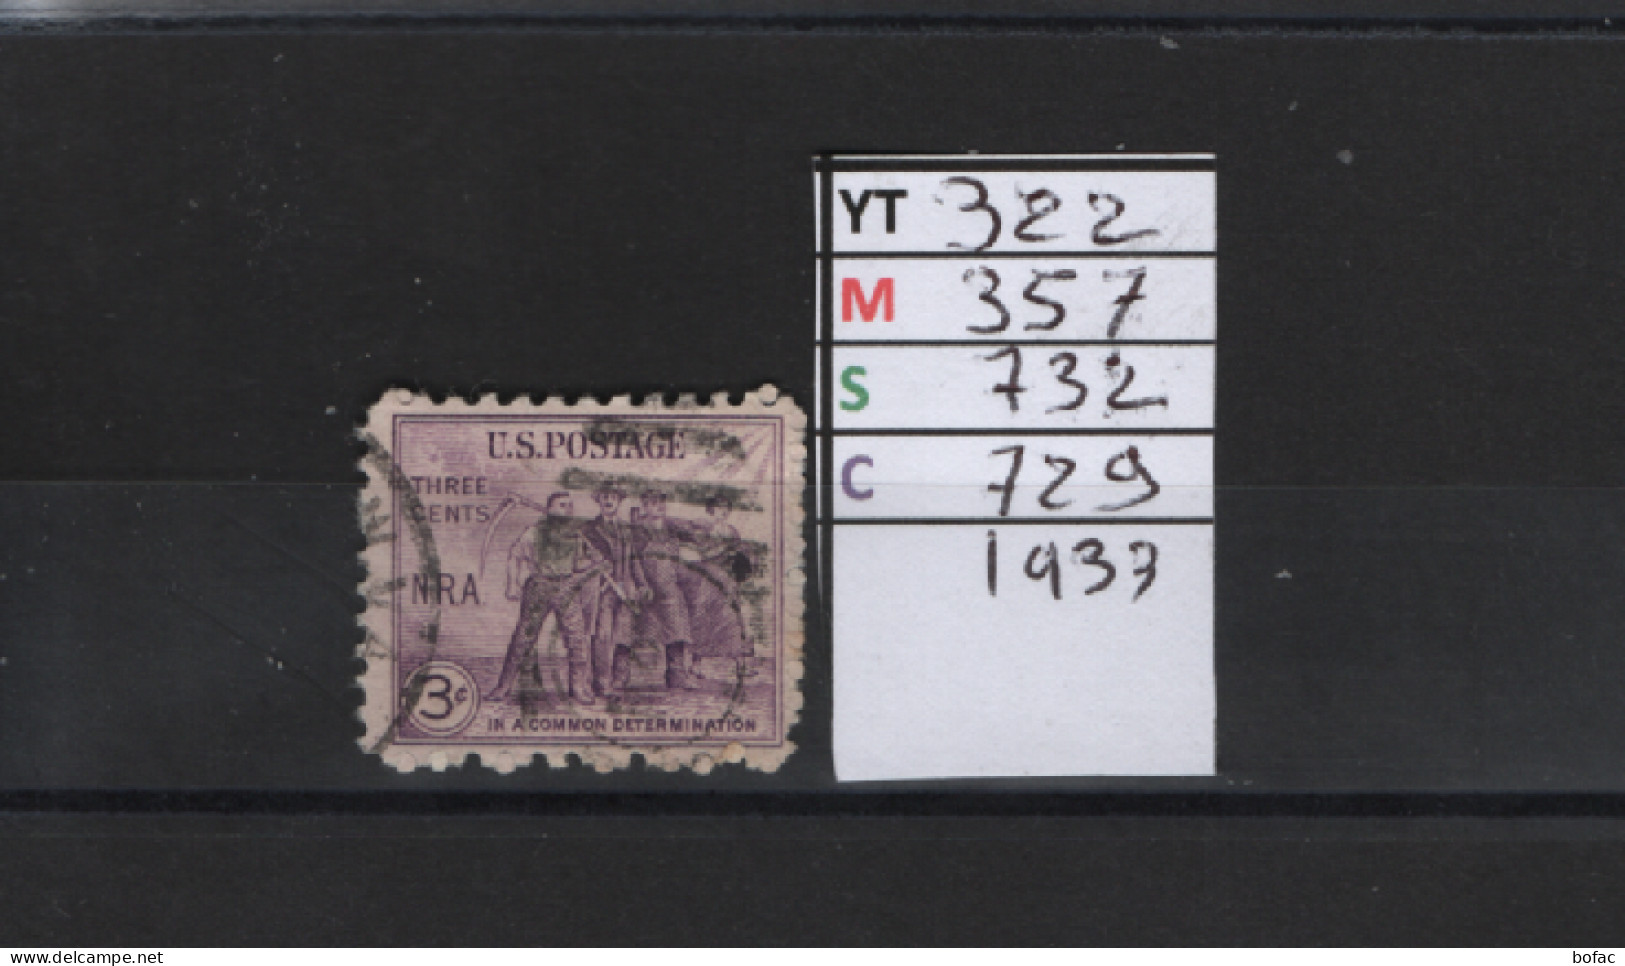 PRIX FIXE Obl 322 YT 357 MIC 732 SCO 729 GIB Renaissance économique 1933 Etats Unis 58A/01 - Used Stamps